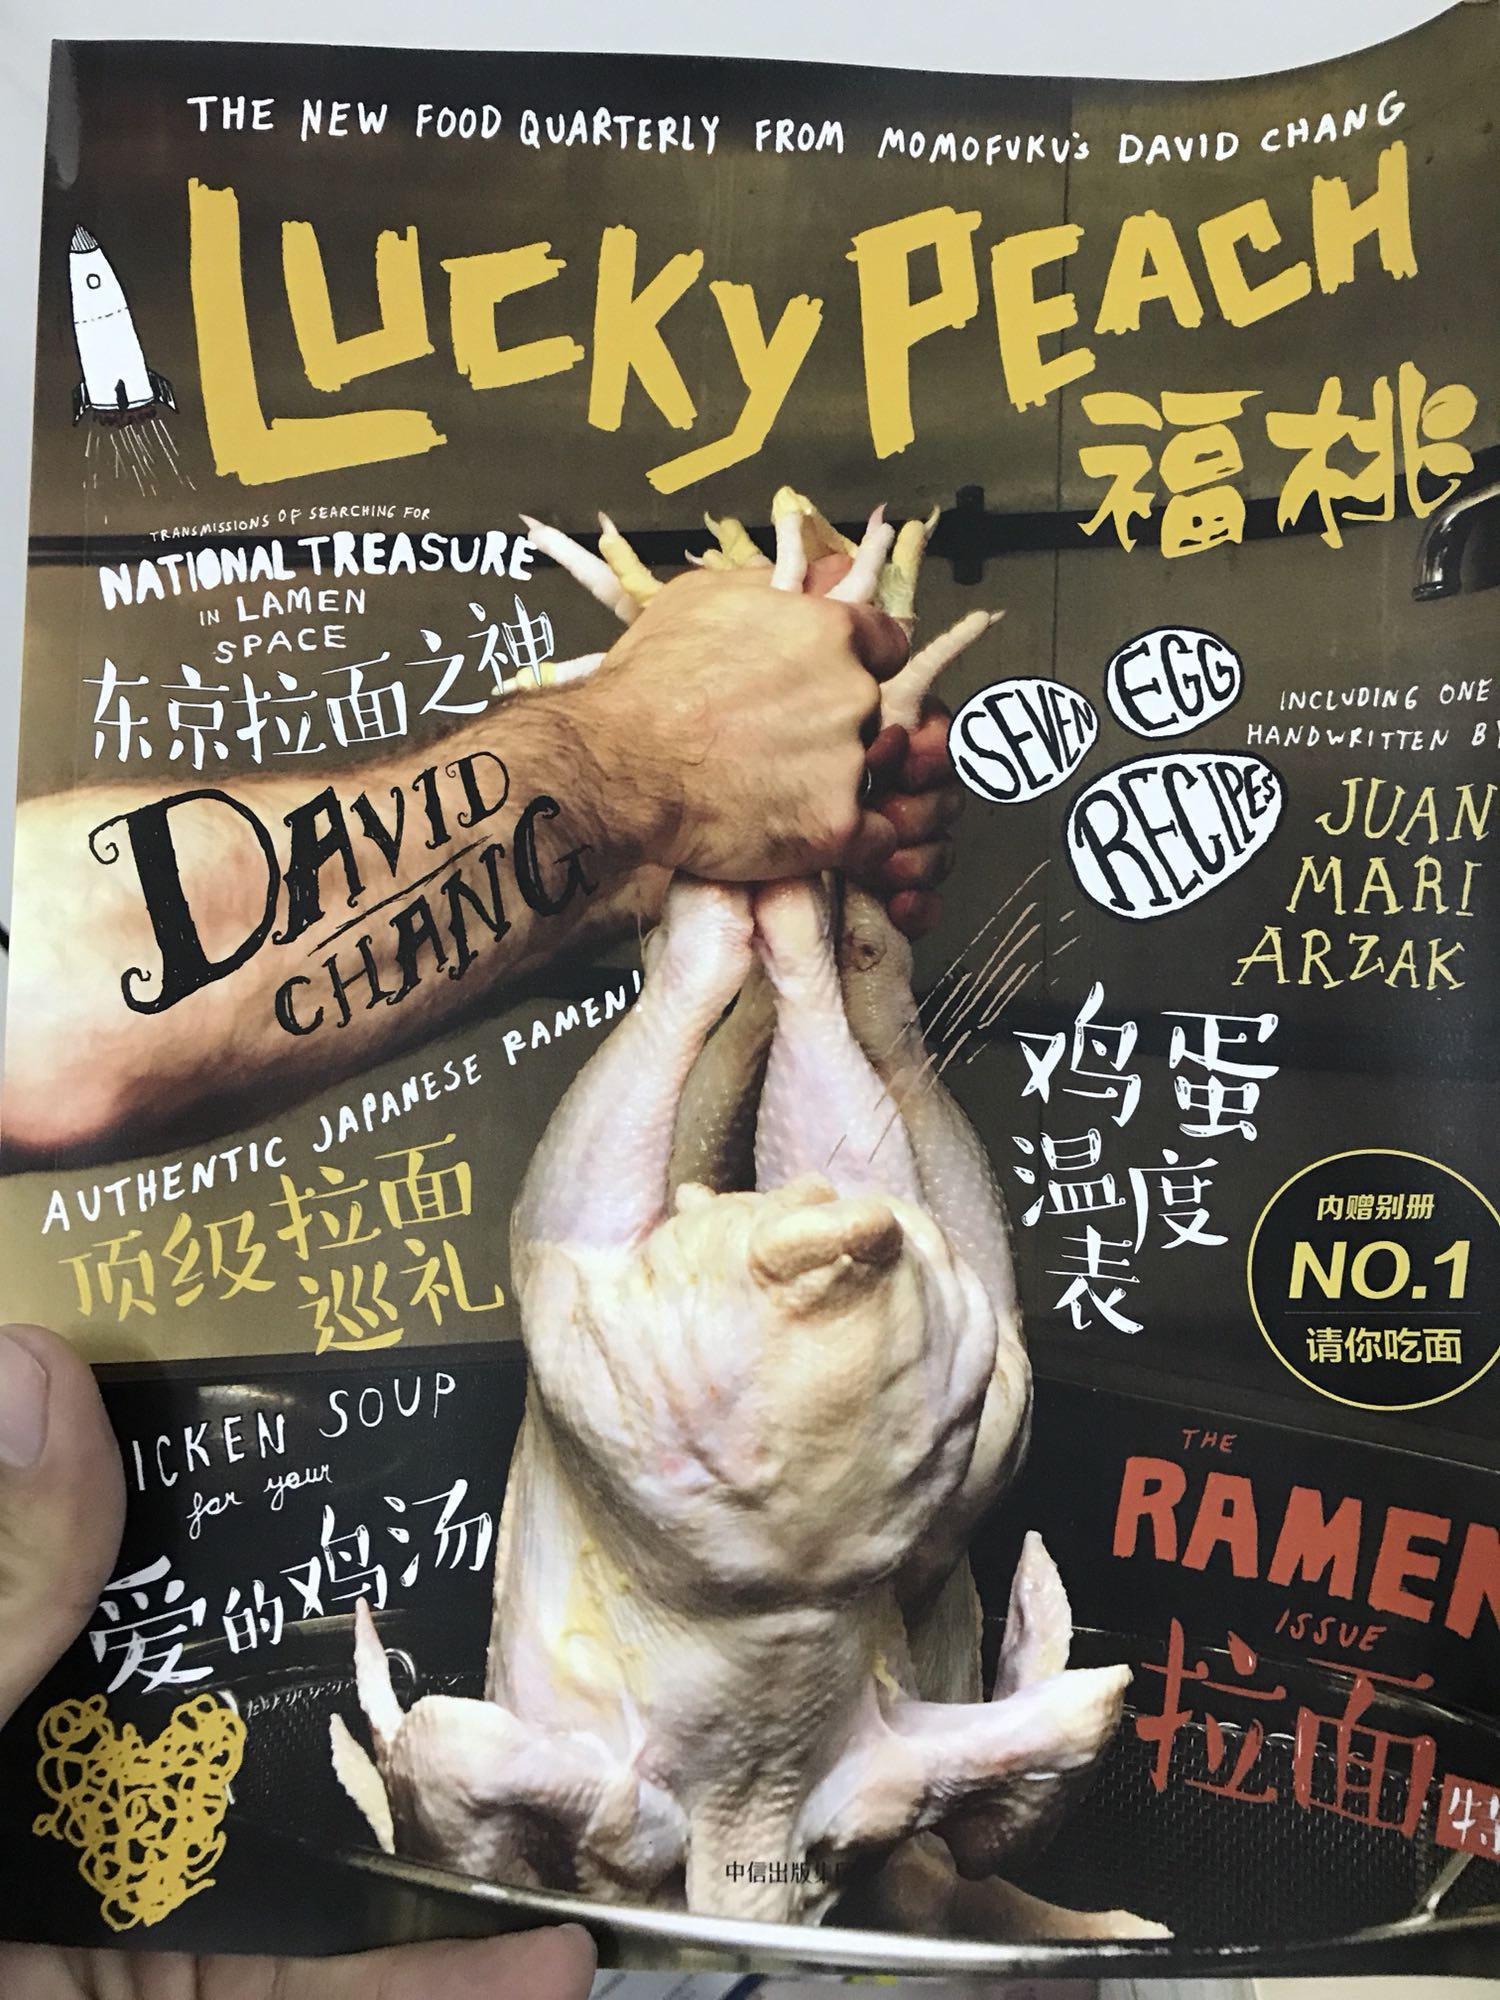 好吃又好玩的一本书，山河小岁月李舒老师公司出品的，我是粉丝一名。